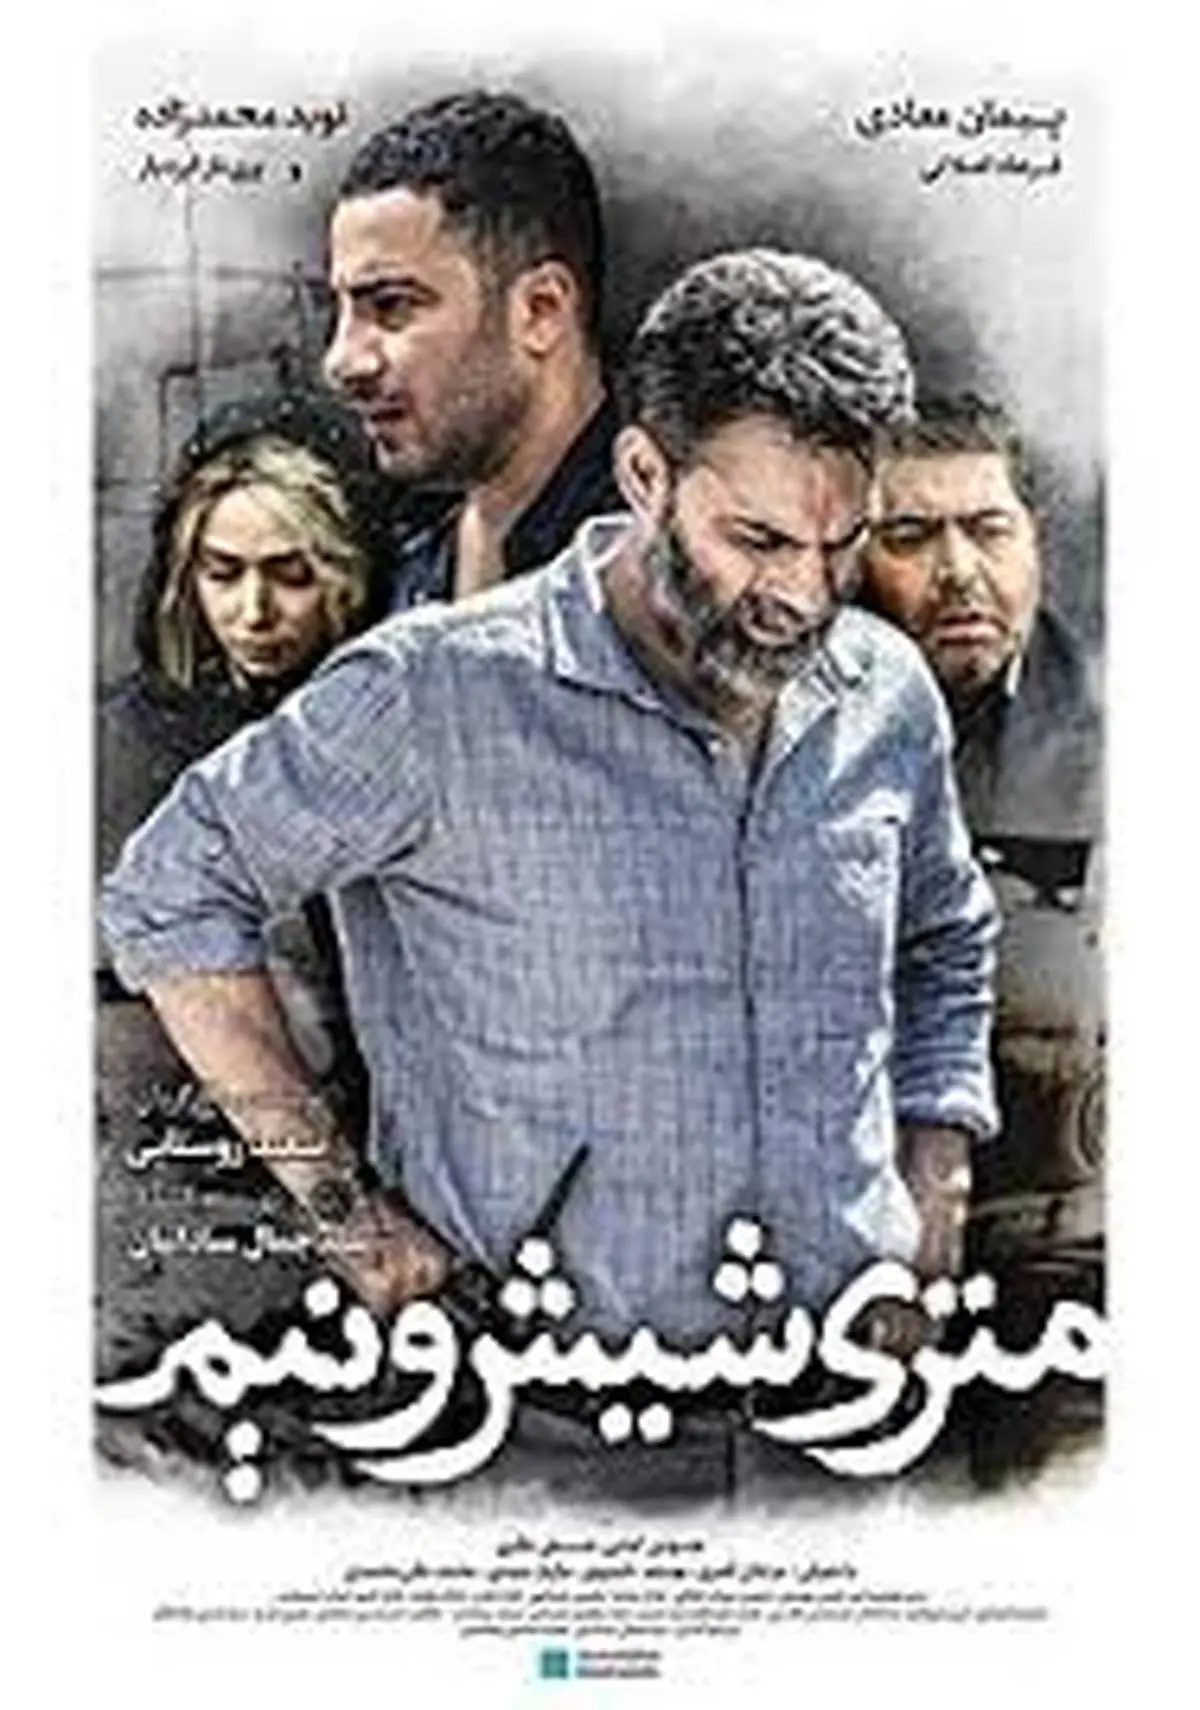 قسمت جنجالی و سانسور شده فیلم سینمایی "متری شیش و نیم"+ فیلم